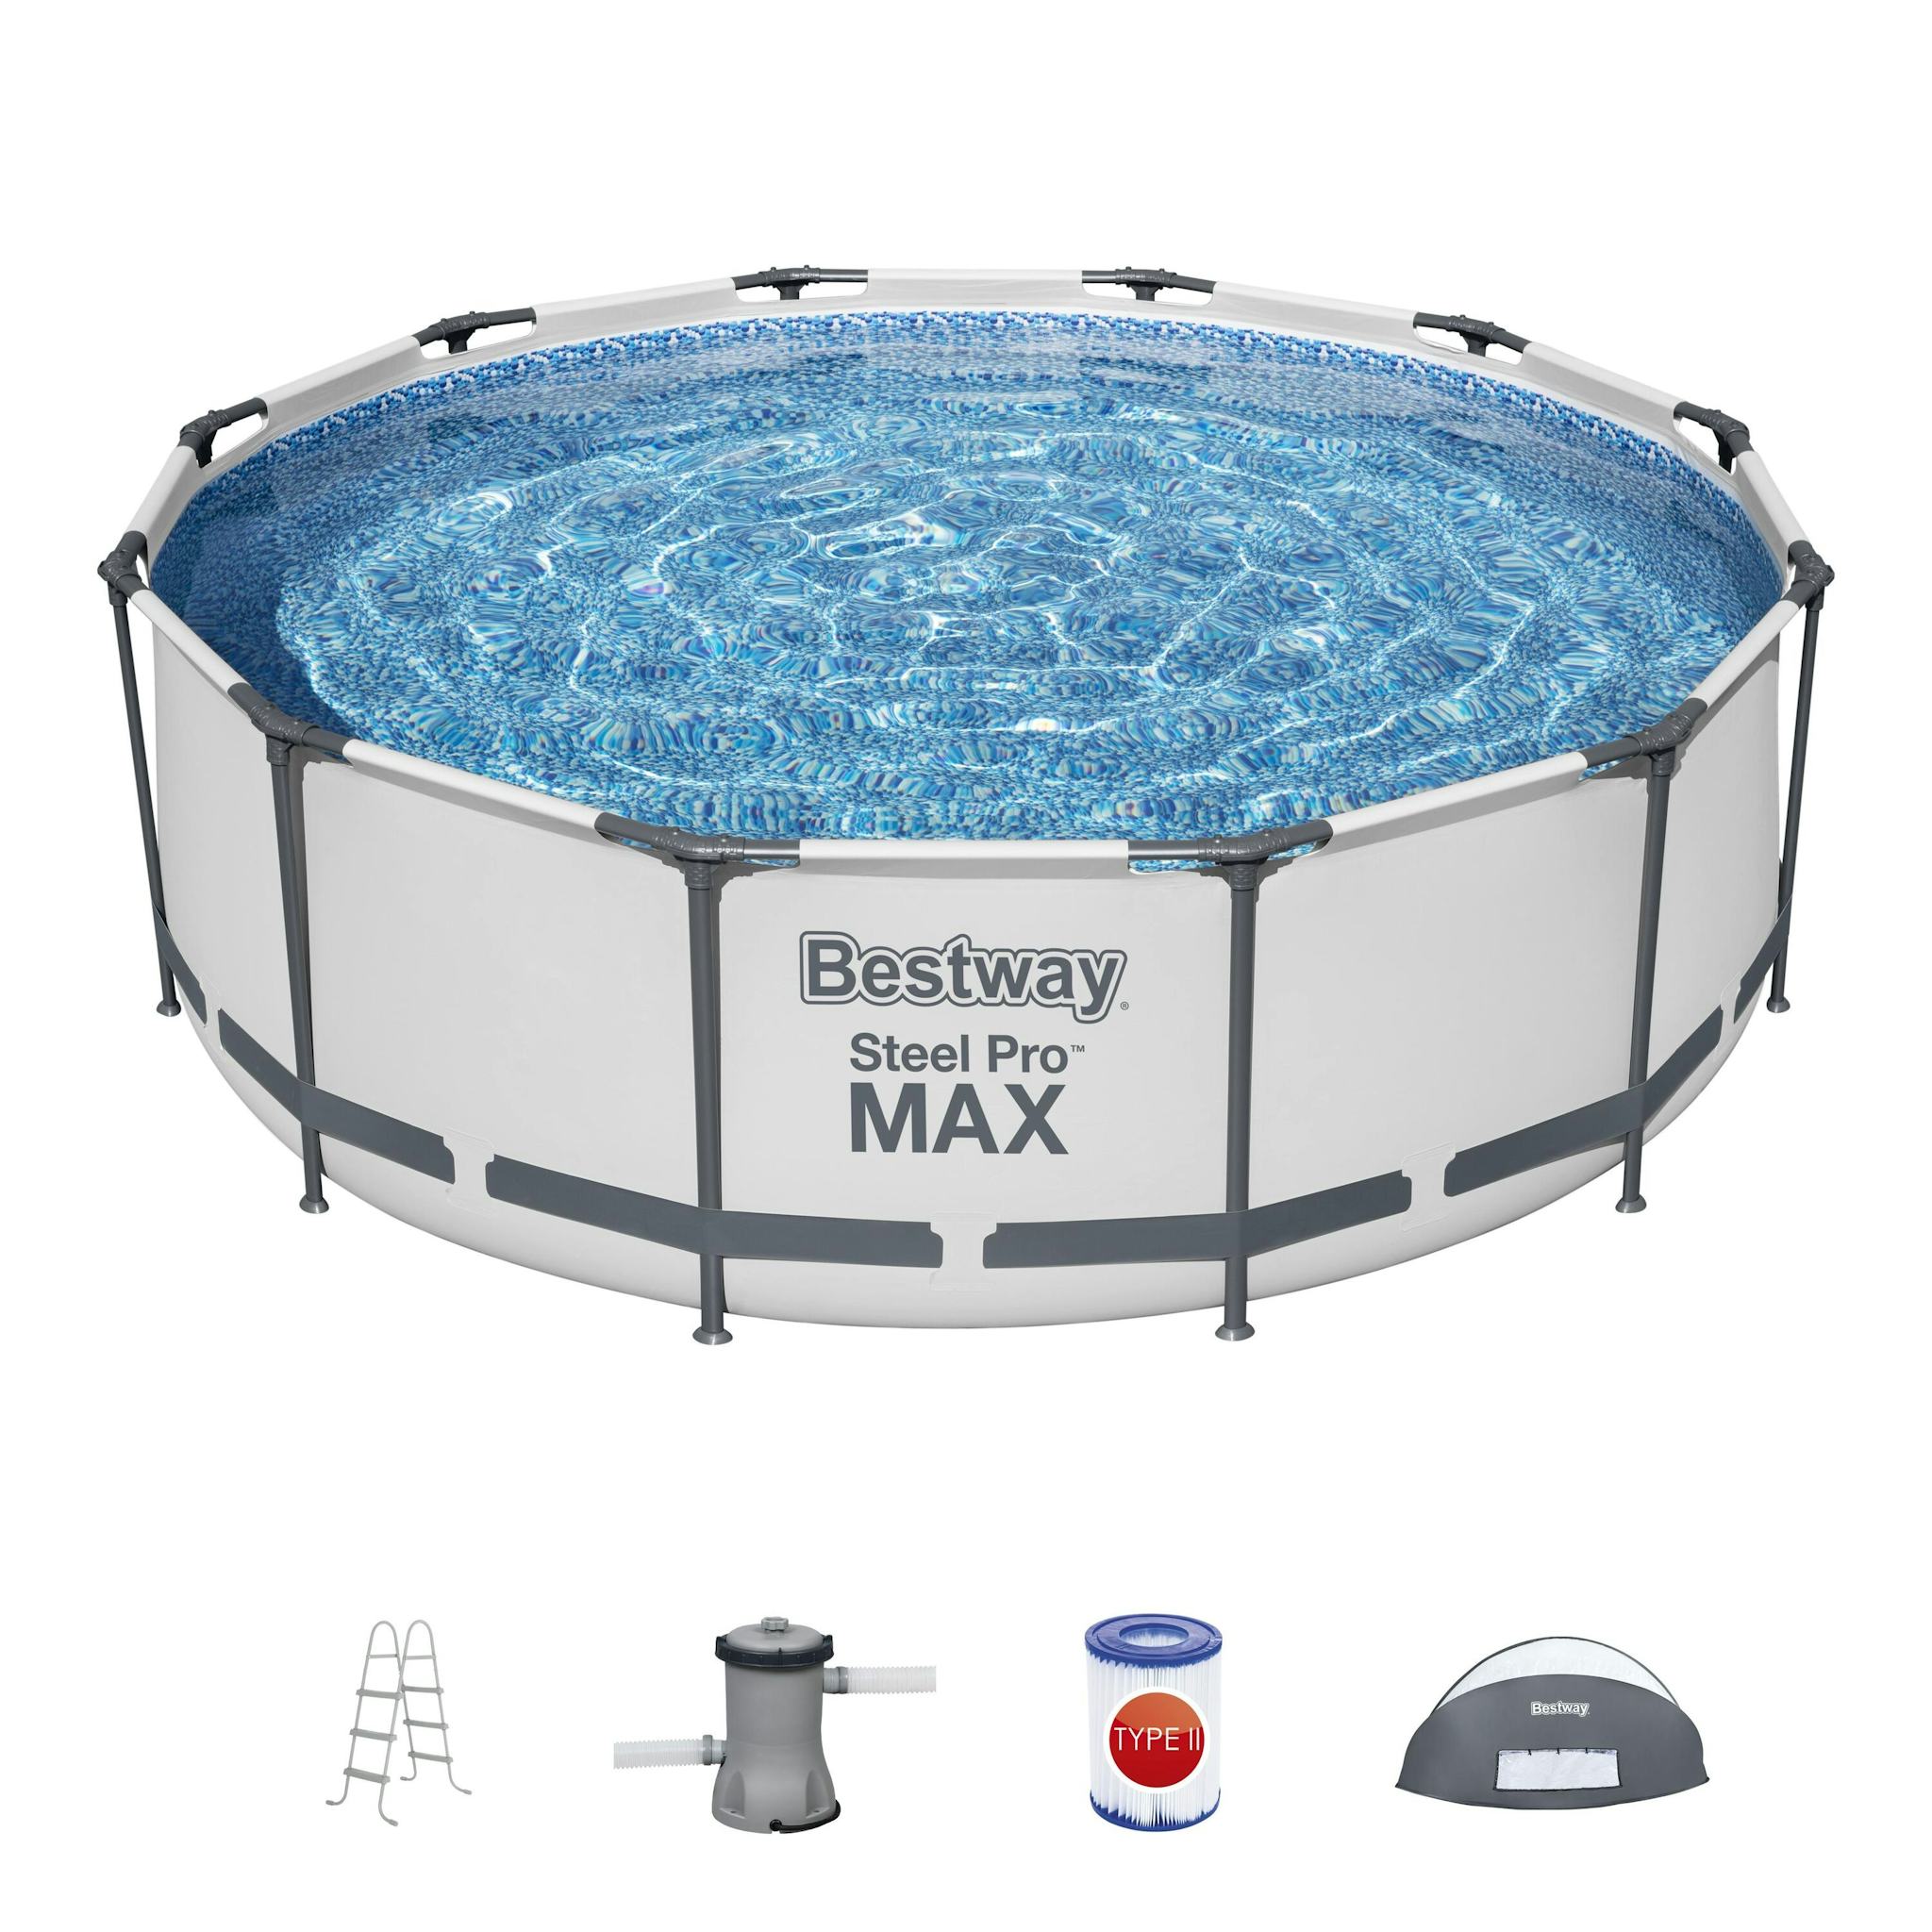 Bovengronds zwembad Steel Pro MAX bovengrondse ronde set van 366x100 cm met zonnescherm Bestway 2